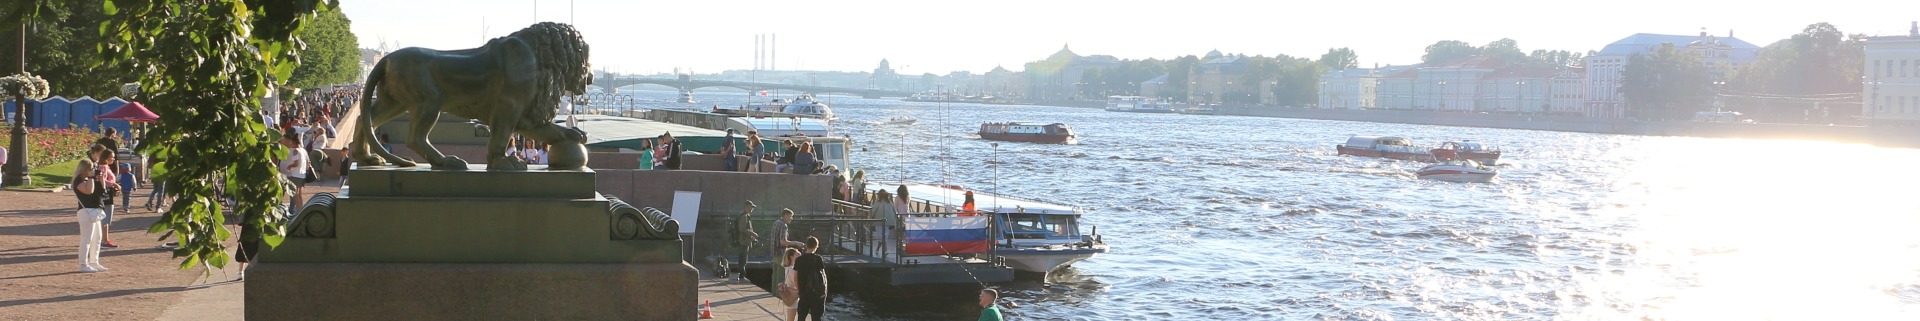 полное расписание водных экскурсий и прогулок по рекам и каналам Санкт_Петербурга